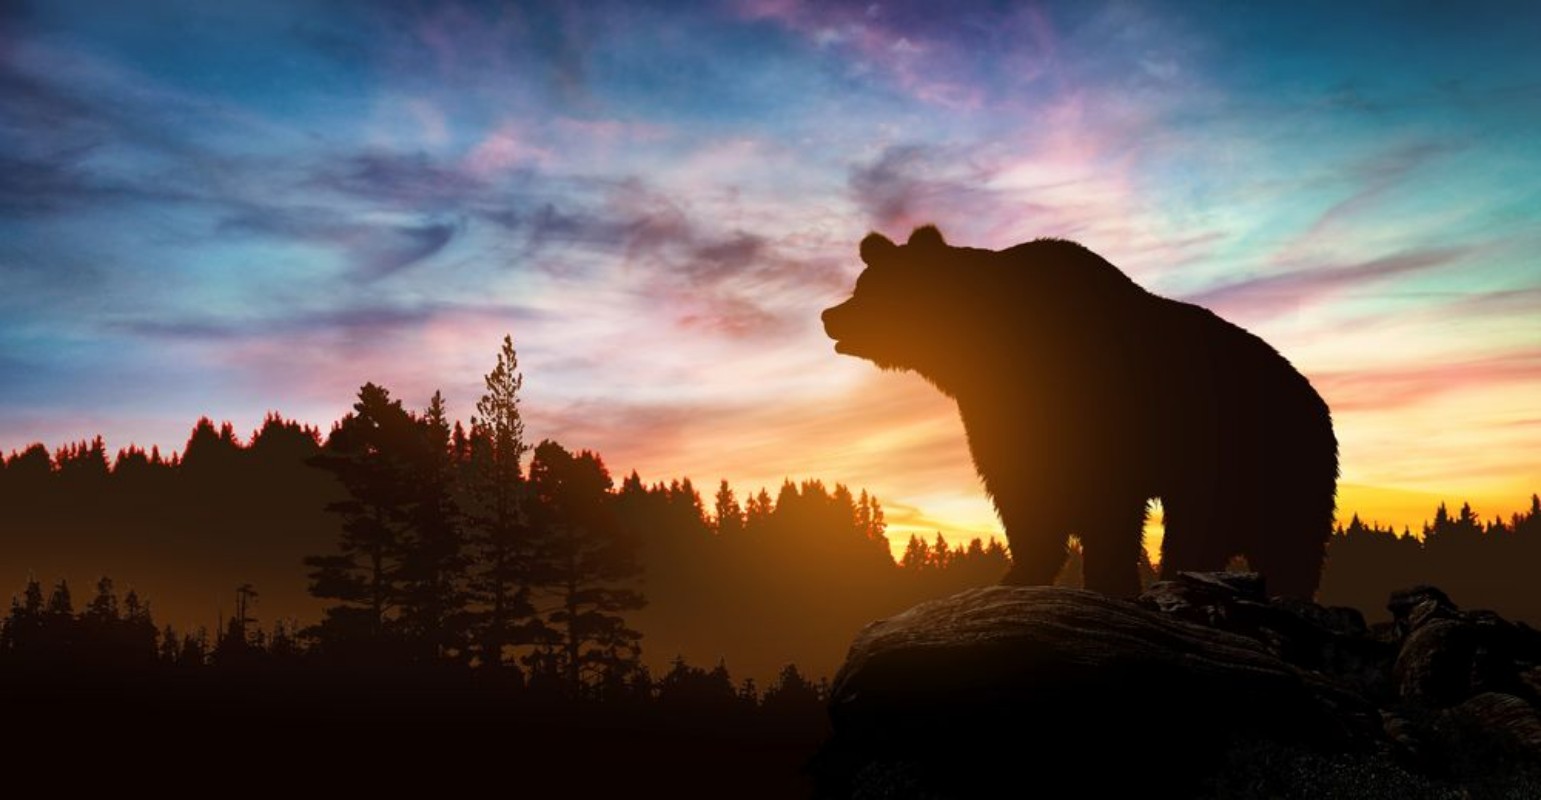 Image de Big bear silhouette